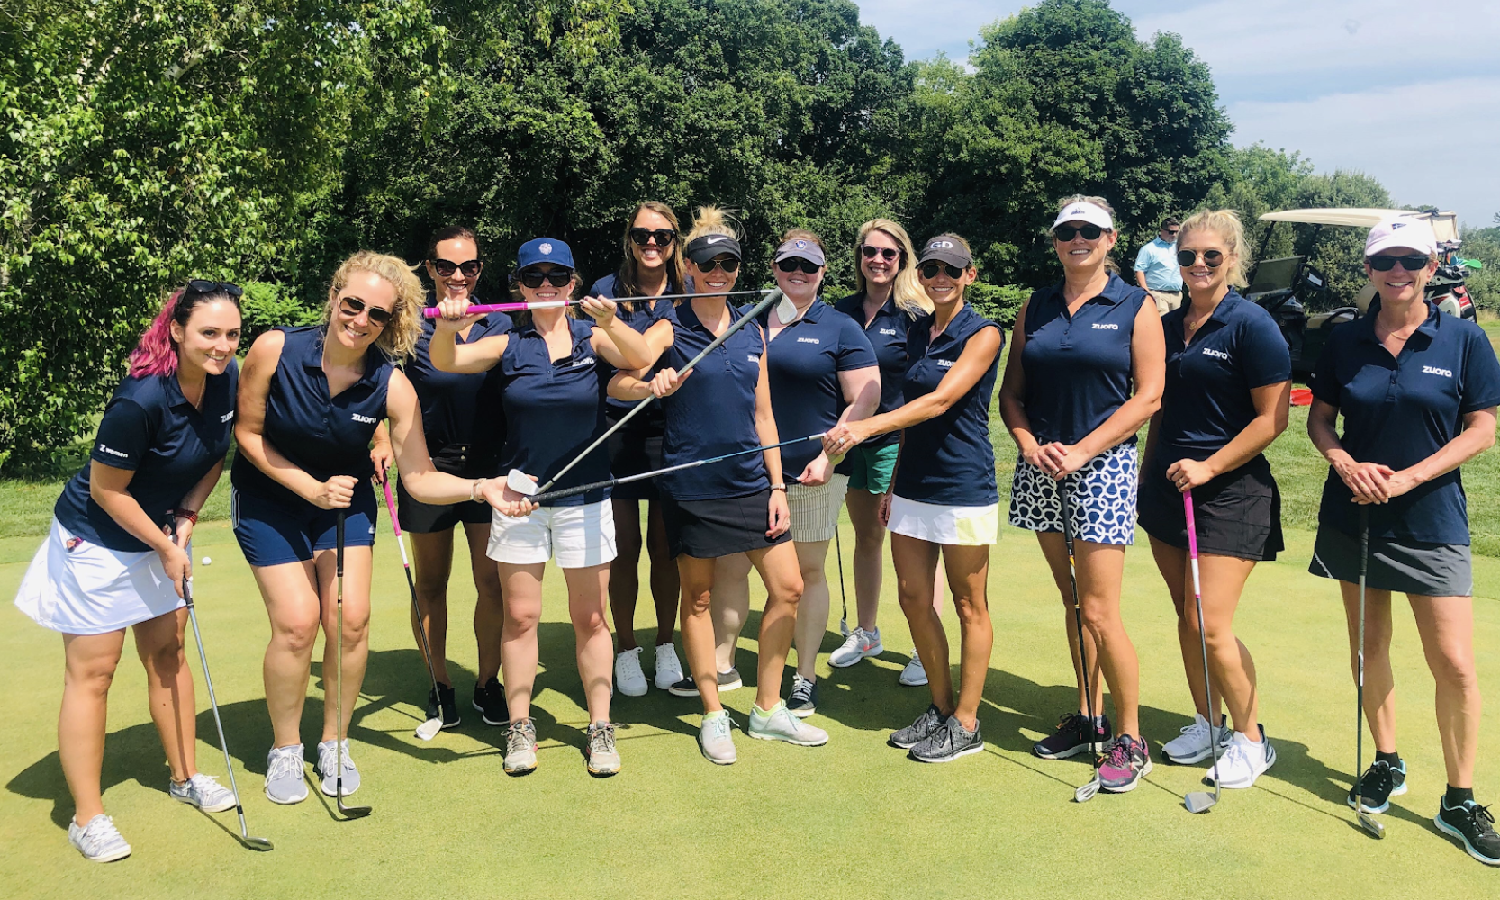 Z-Women hit the golf course in Boston